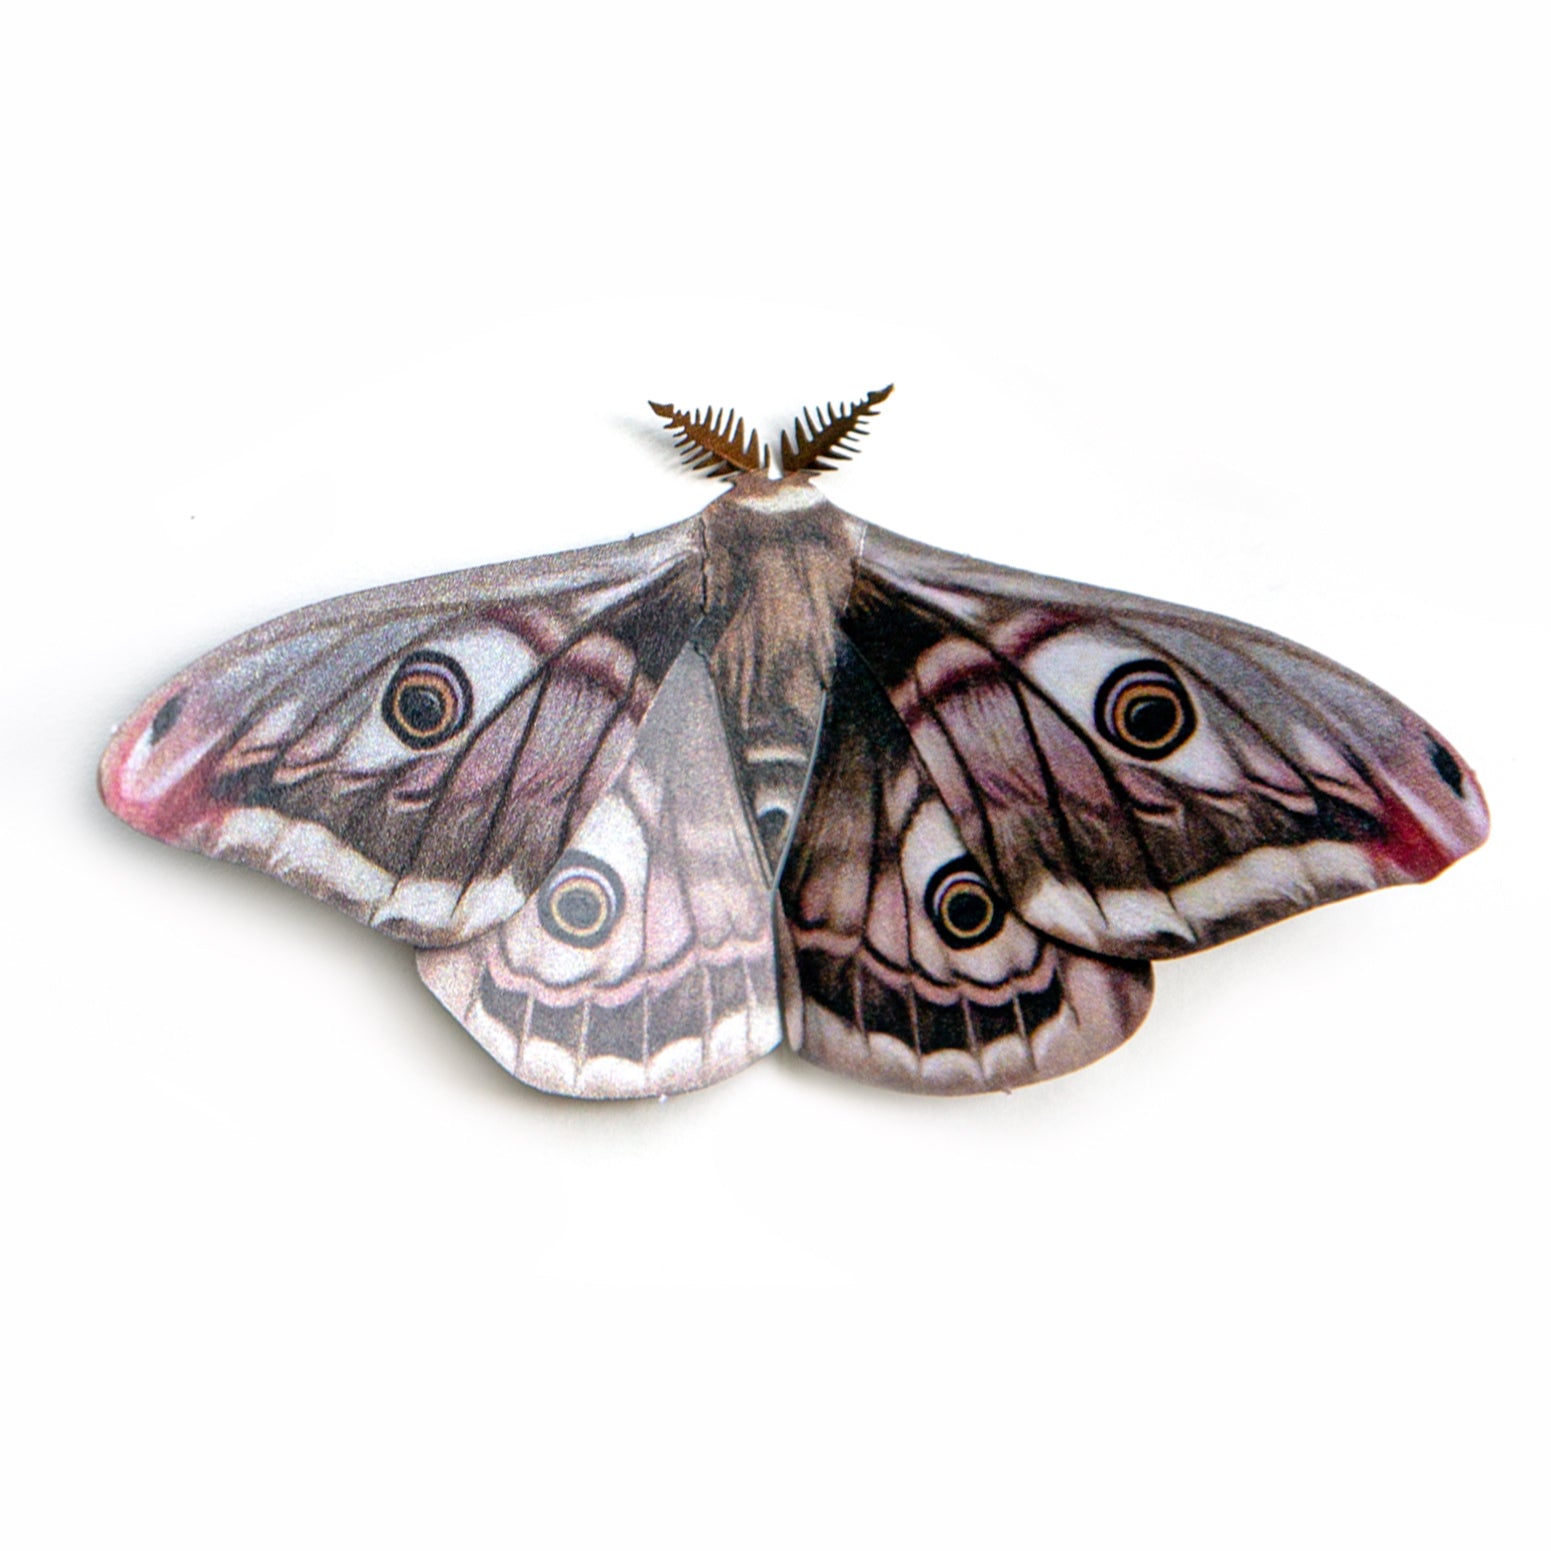 'Emperor' Moth